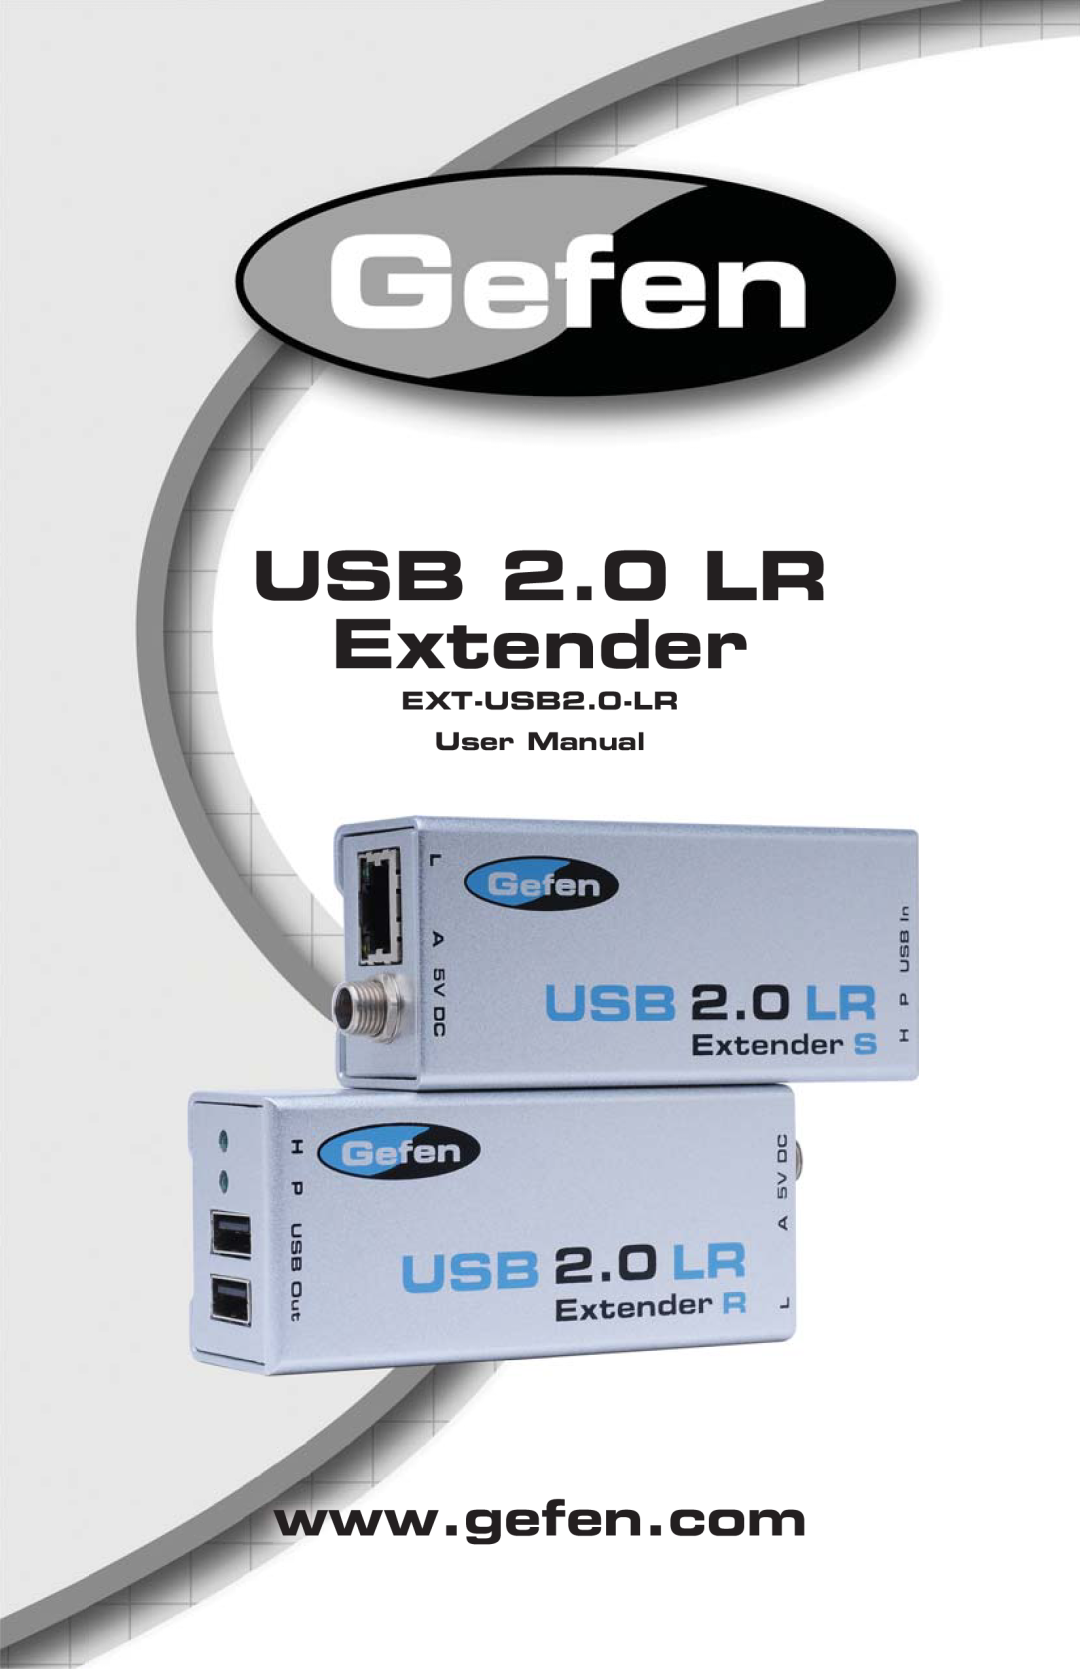 Gefen user manual EXT-USB2.0-LR User Manual, USB 2.0 LR Extender 